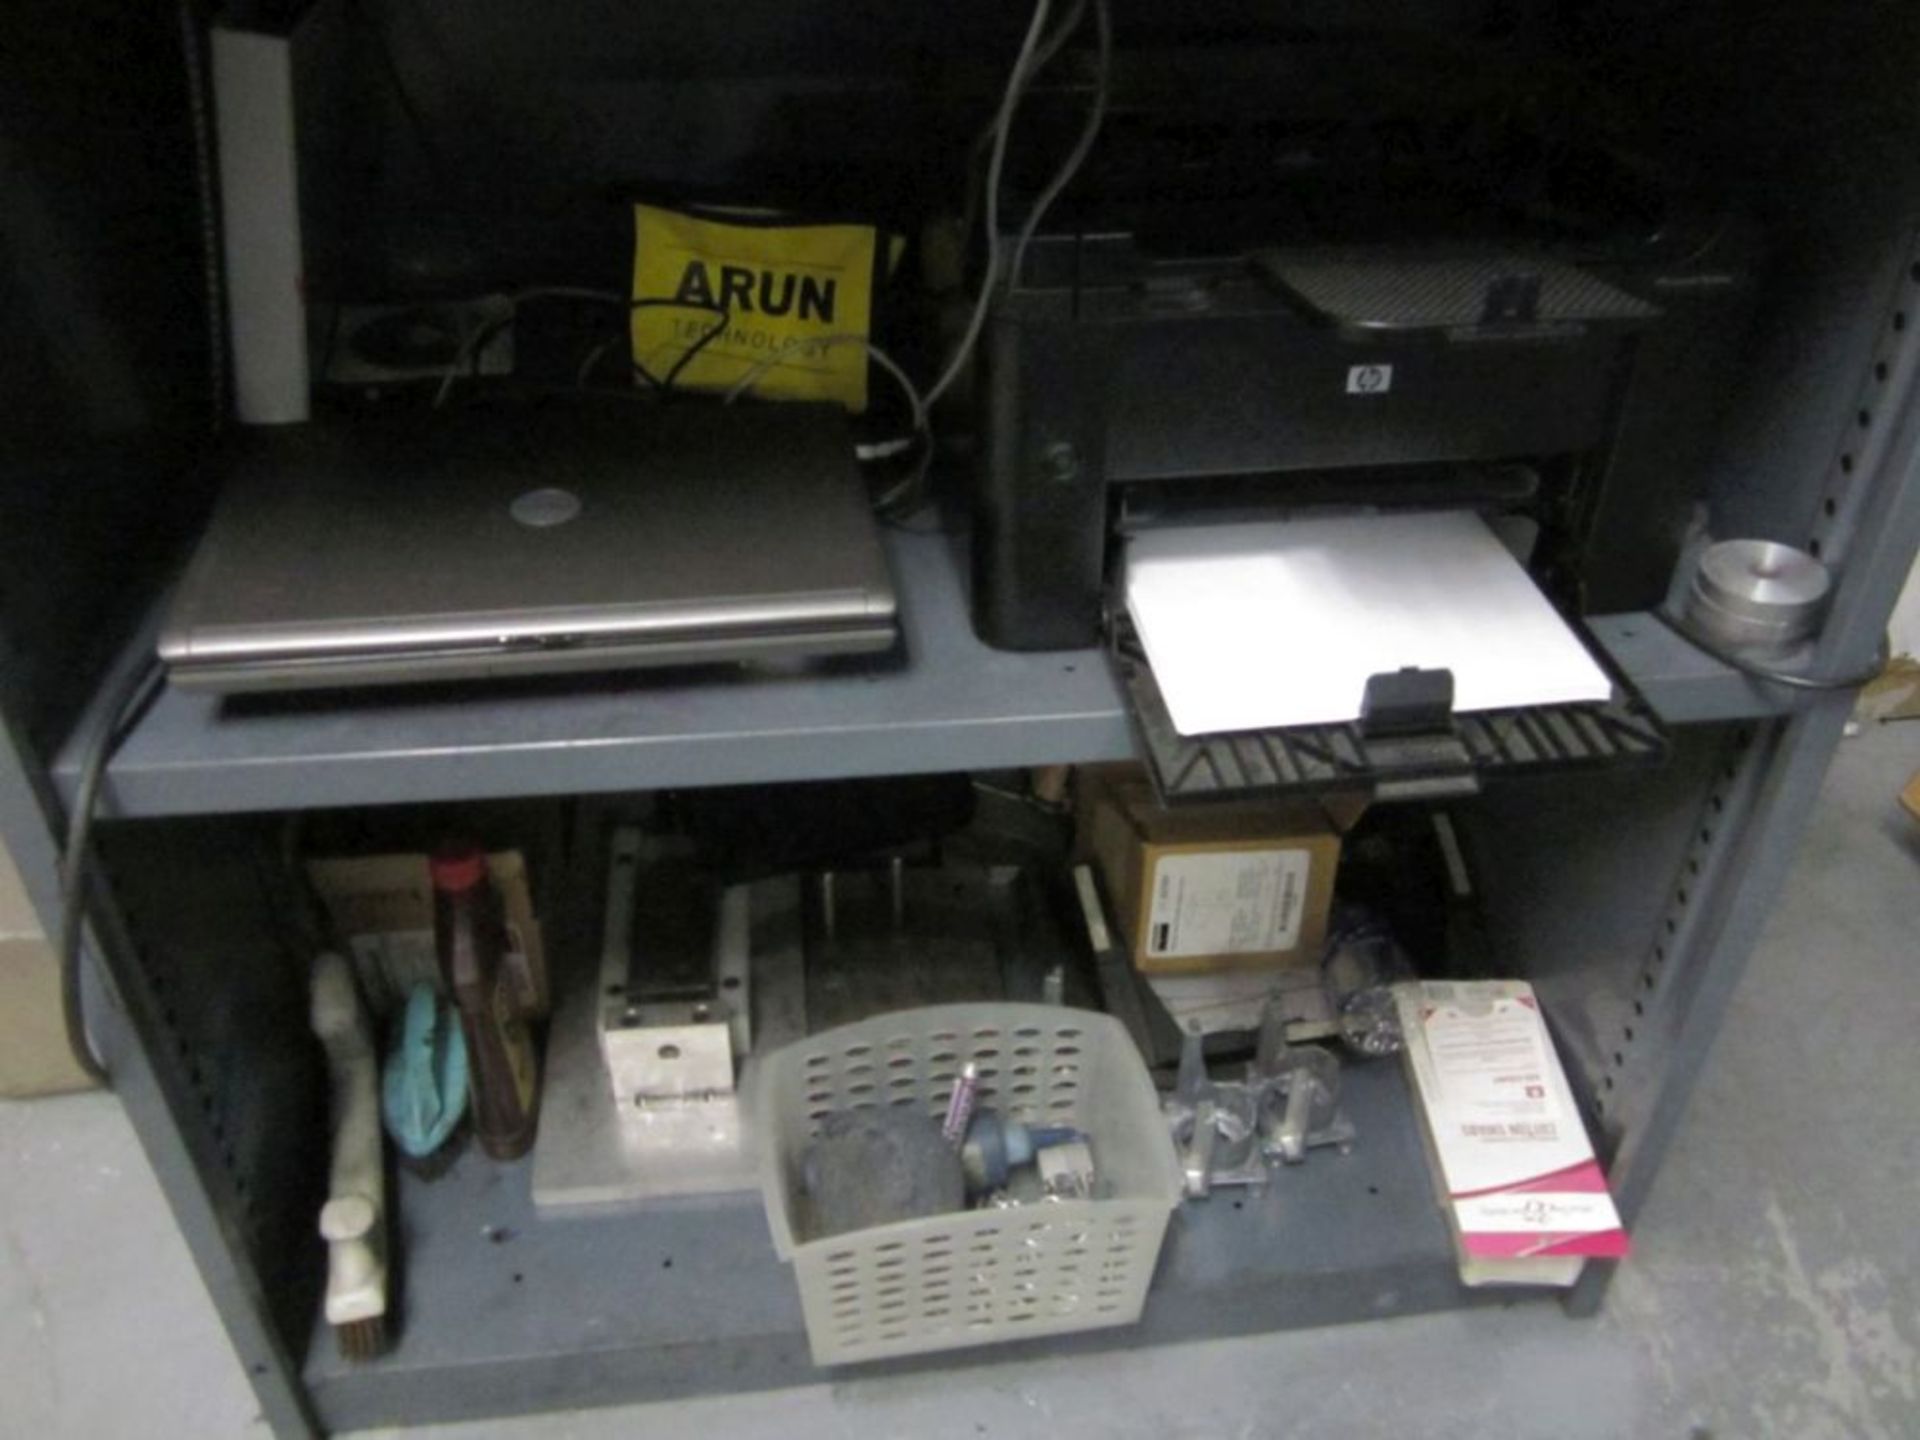 ARUN TECHNOLOGY 2500 SERIES METAL SCAN W/ COMPUTER, PRINTER & CART - Image 3 of 3